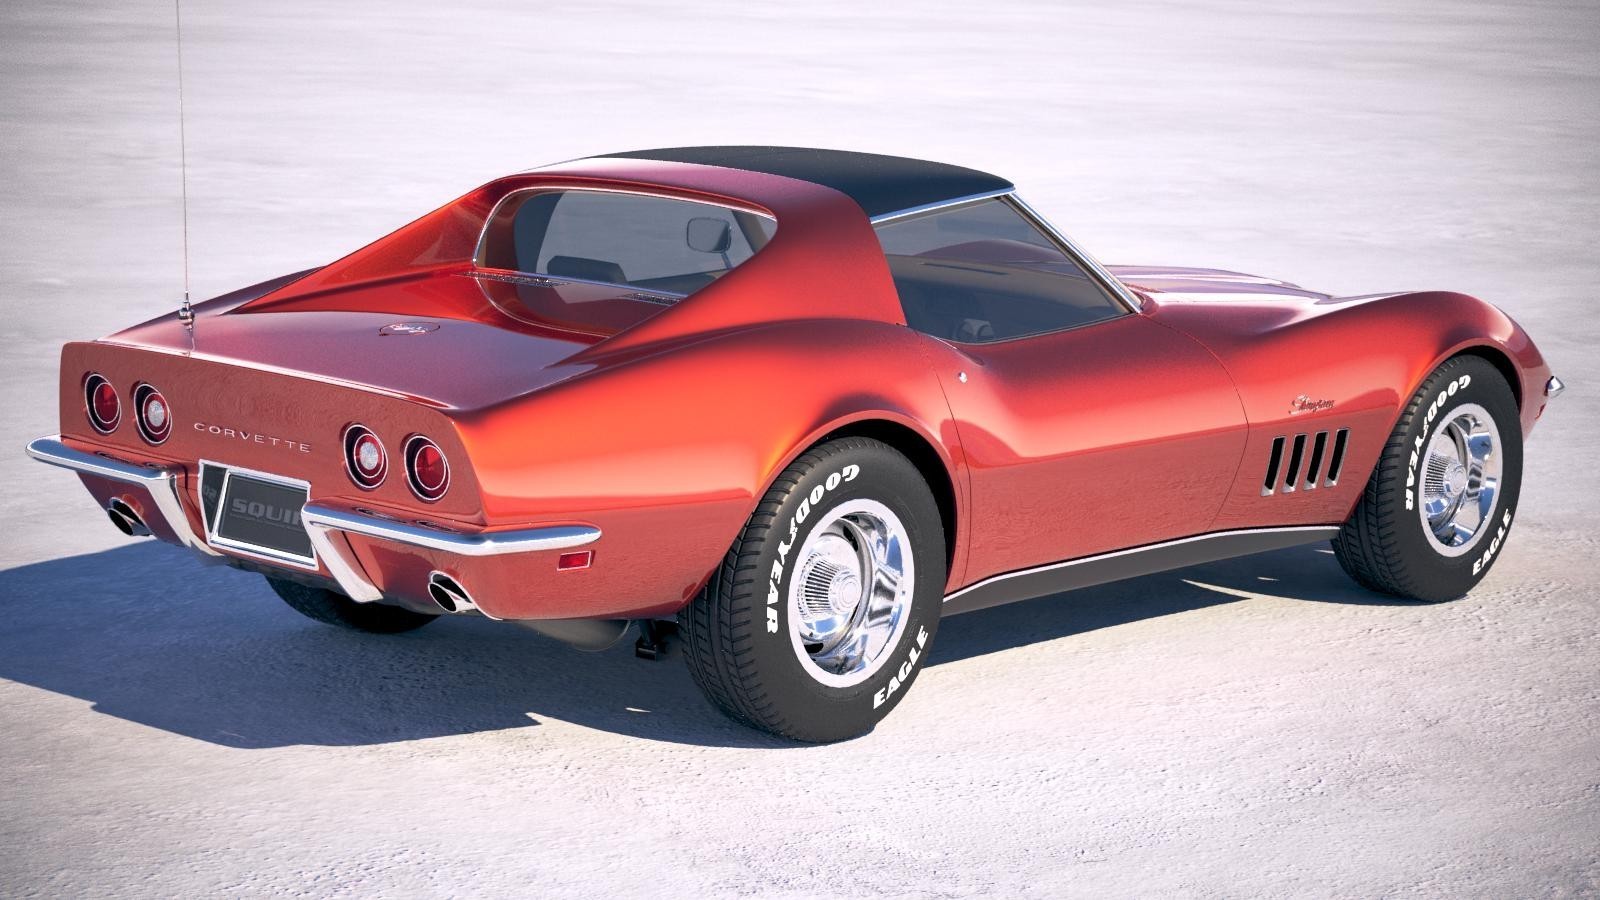 Chevrolet Corvette C3 - влажная мечта, будоражащая сознание миллионов челов...